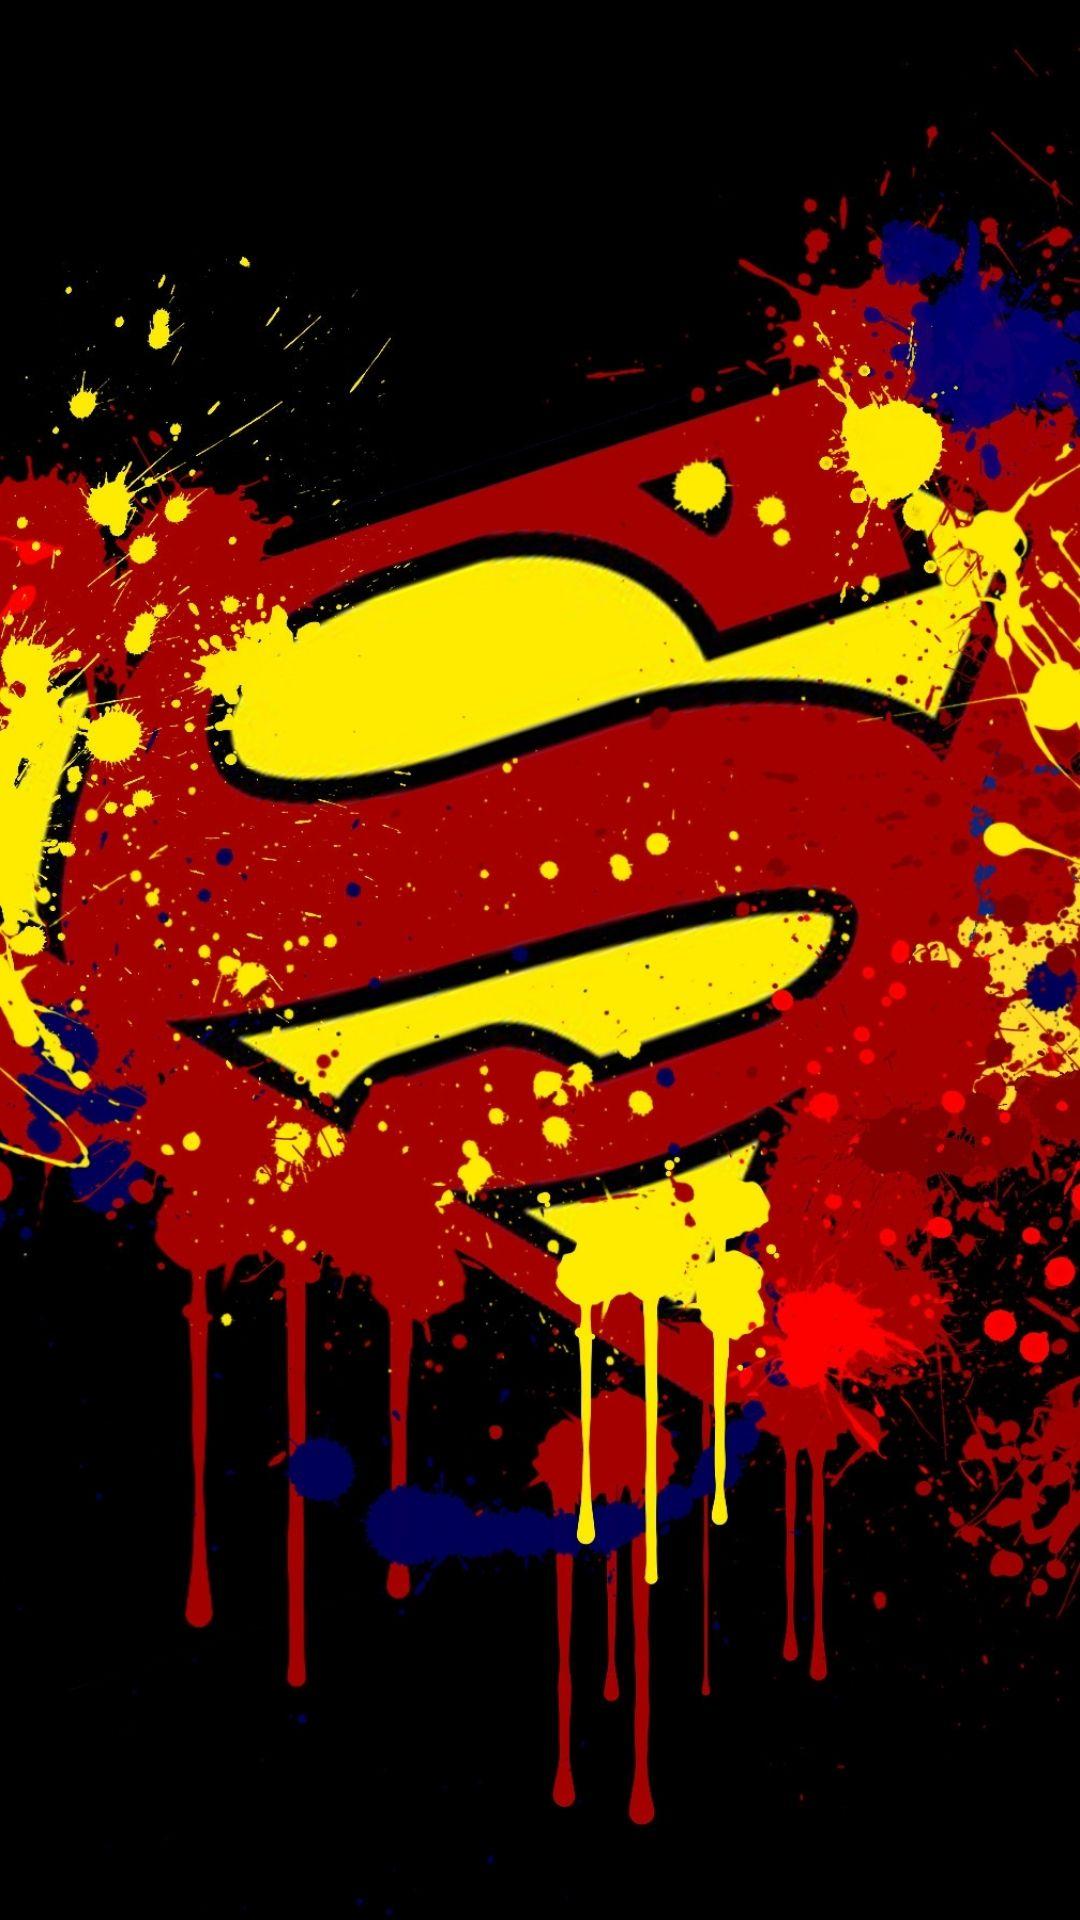 Comics Superman (1080x1920) Wallpaper